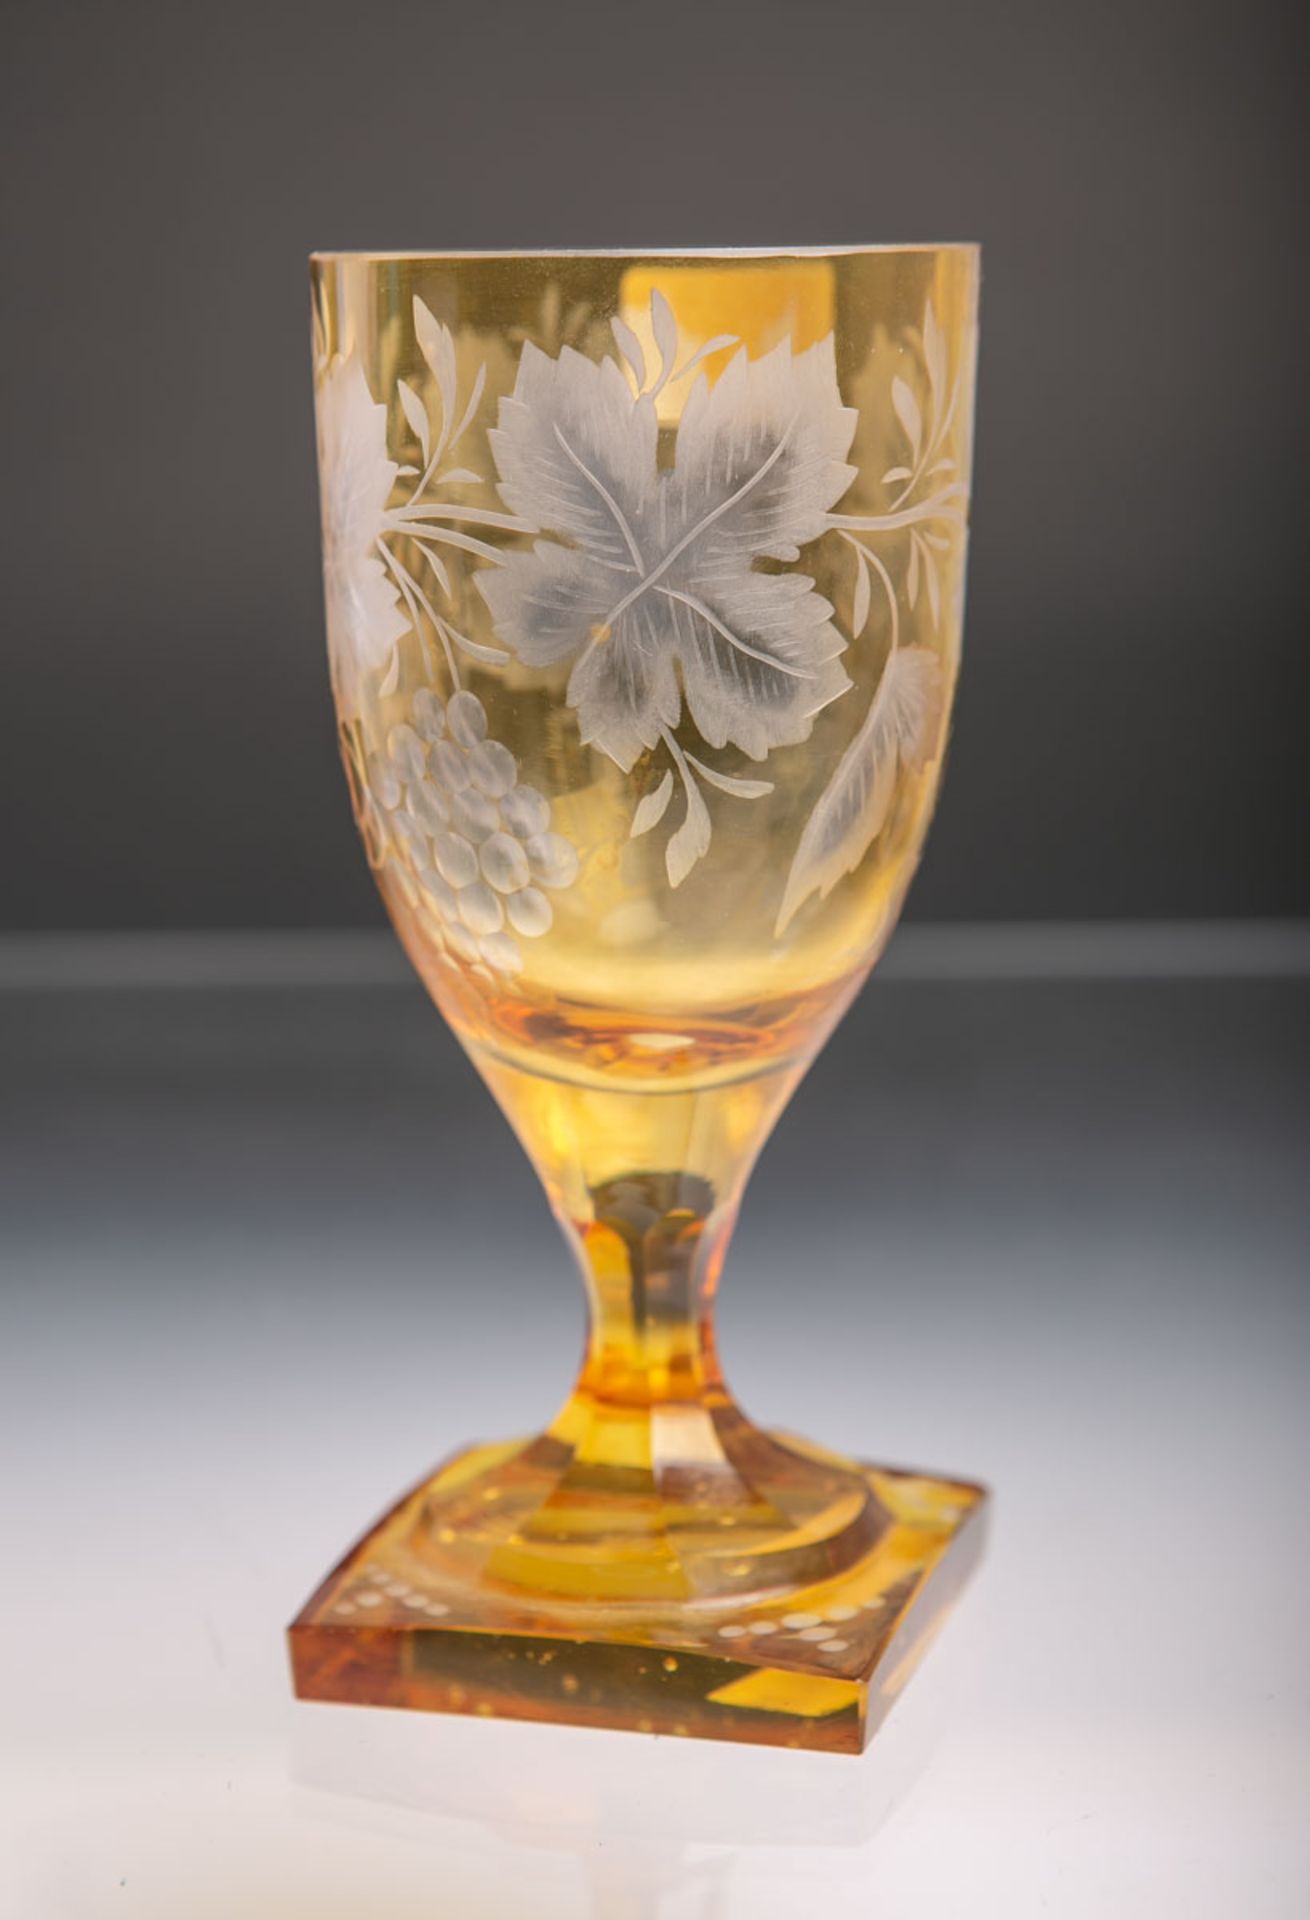 Pokalglas (wohl 20. Jh.), dickwandiges klares Glas gelb überfangen u. geschliffen, auf quadratischem